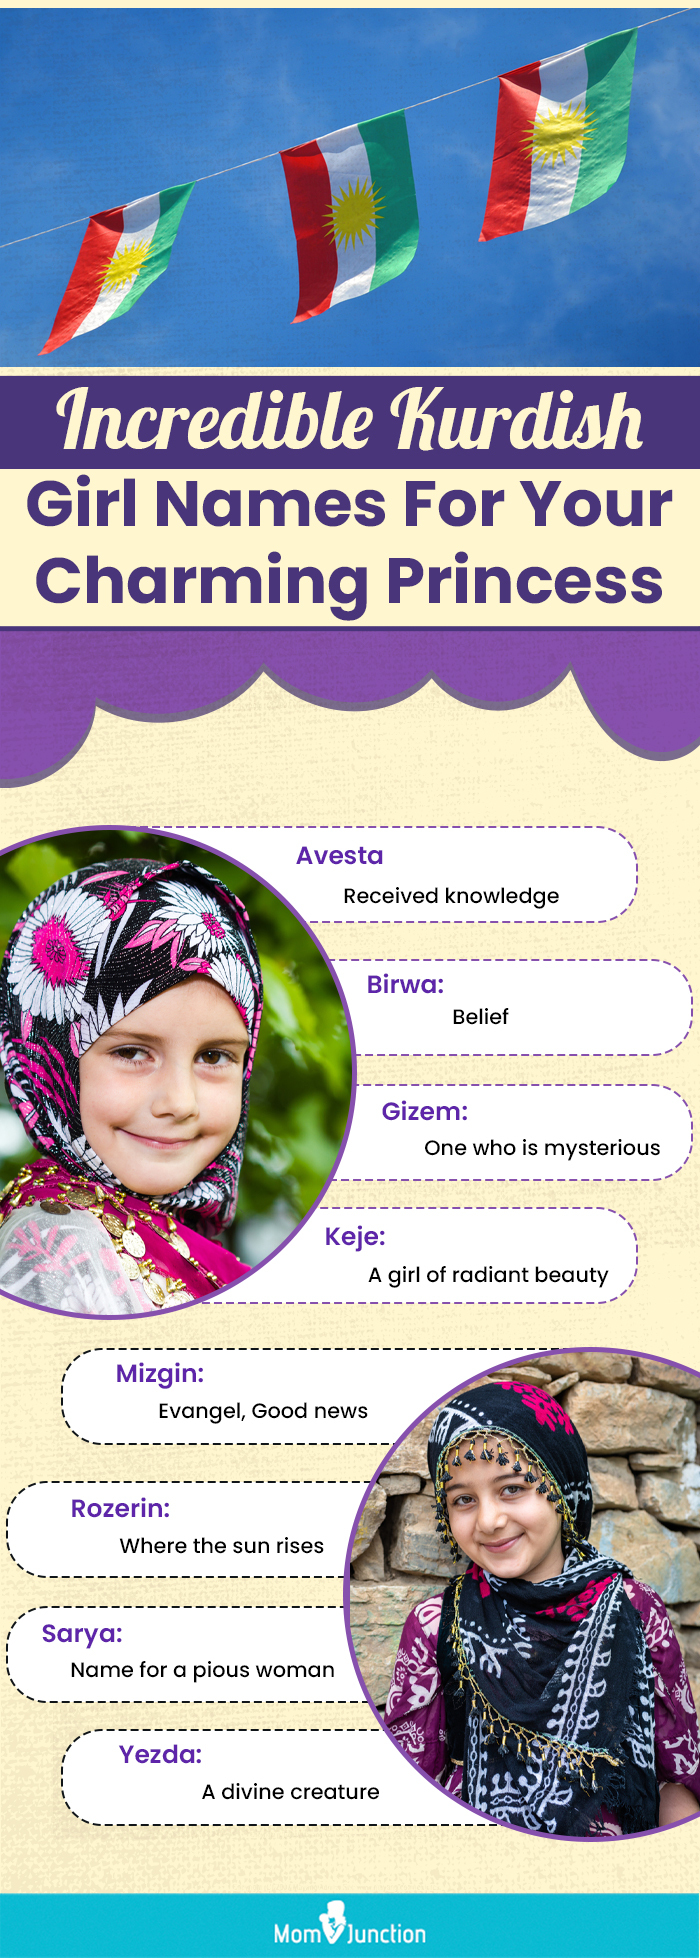 incredible kurdish girl names for your charming princess (infographic)